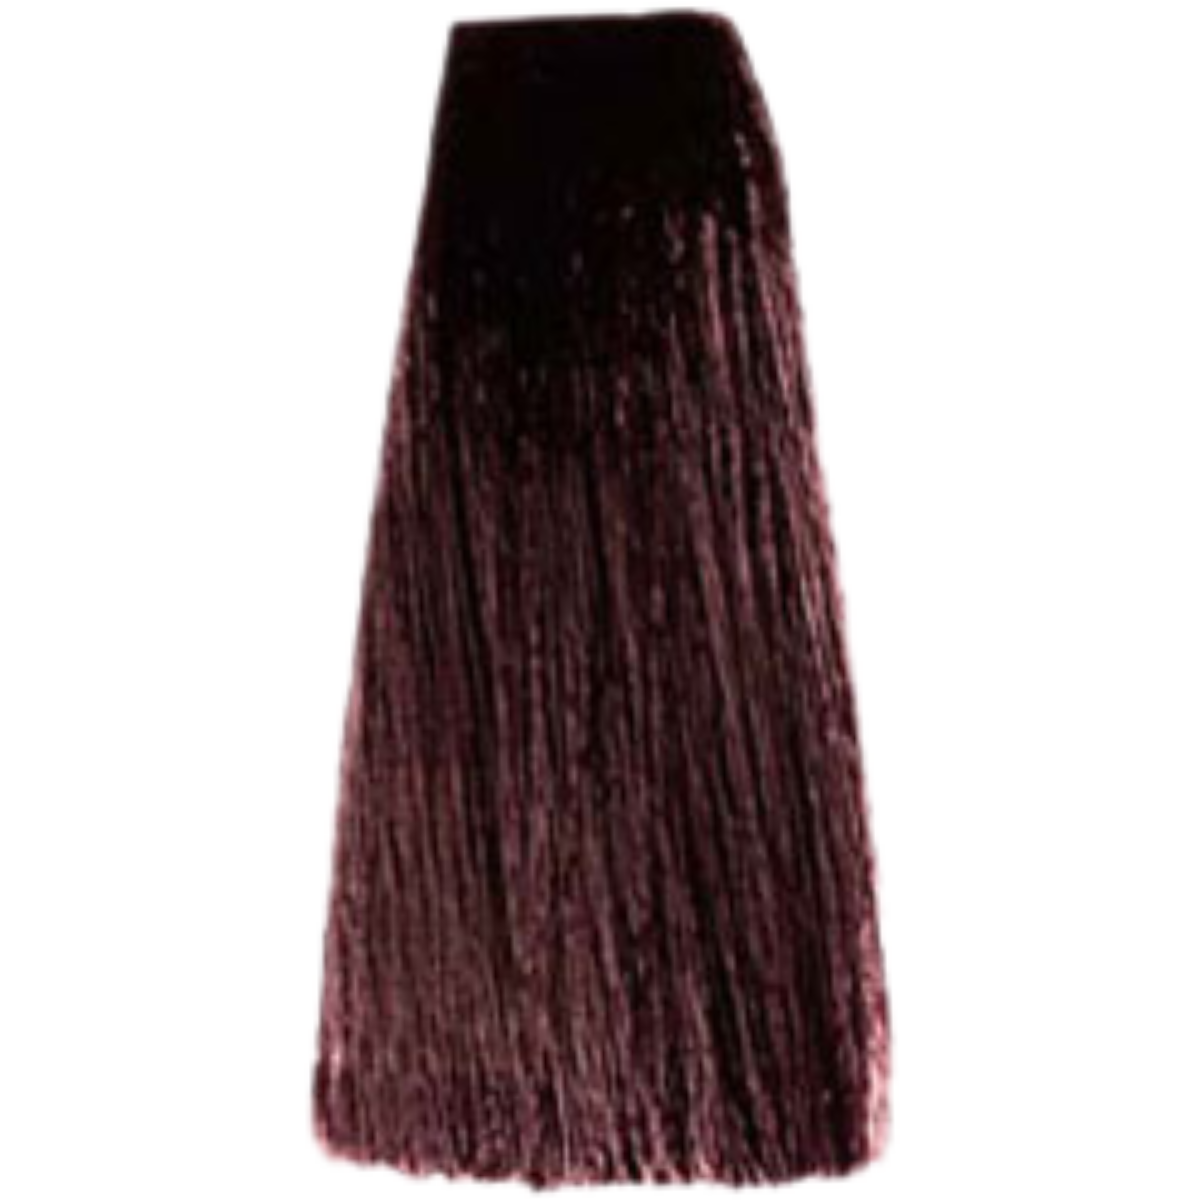 צבע שיער 4.52 CHOCOLATE MAHOGANY BROWN פארמויטה FarmaVita צבע לשיער 100 גרם